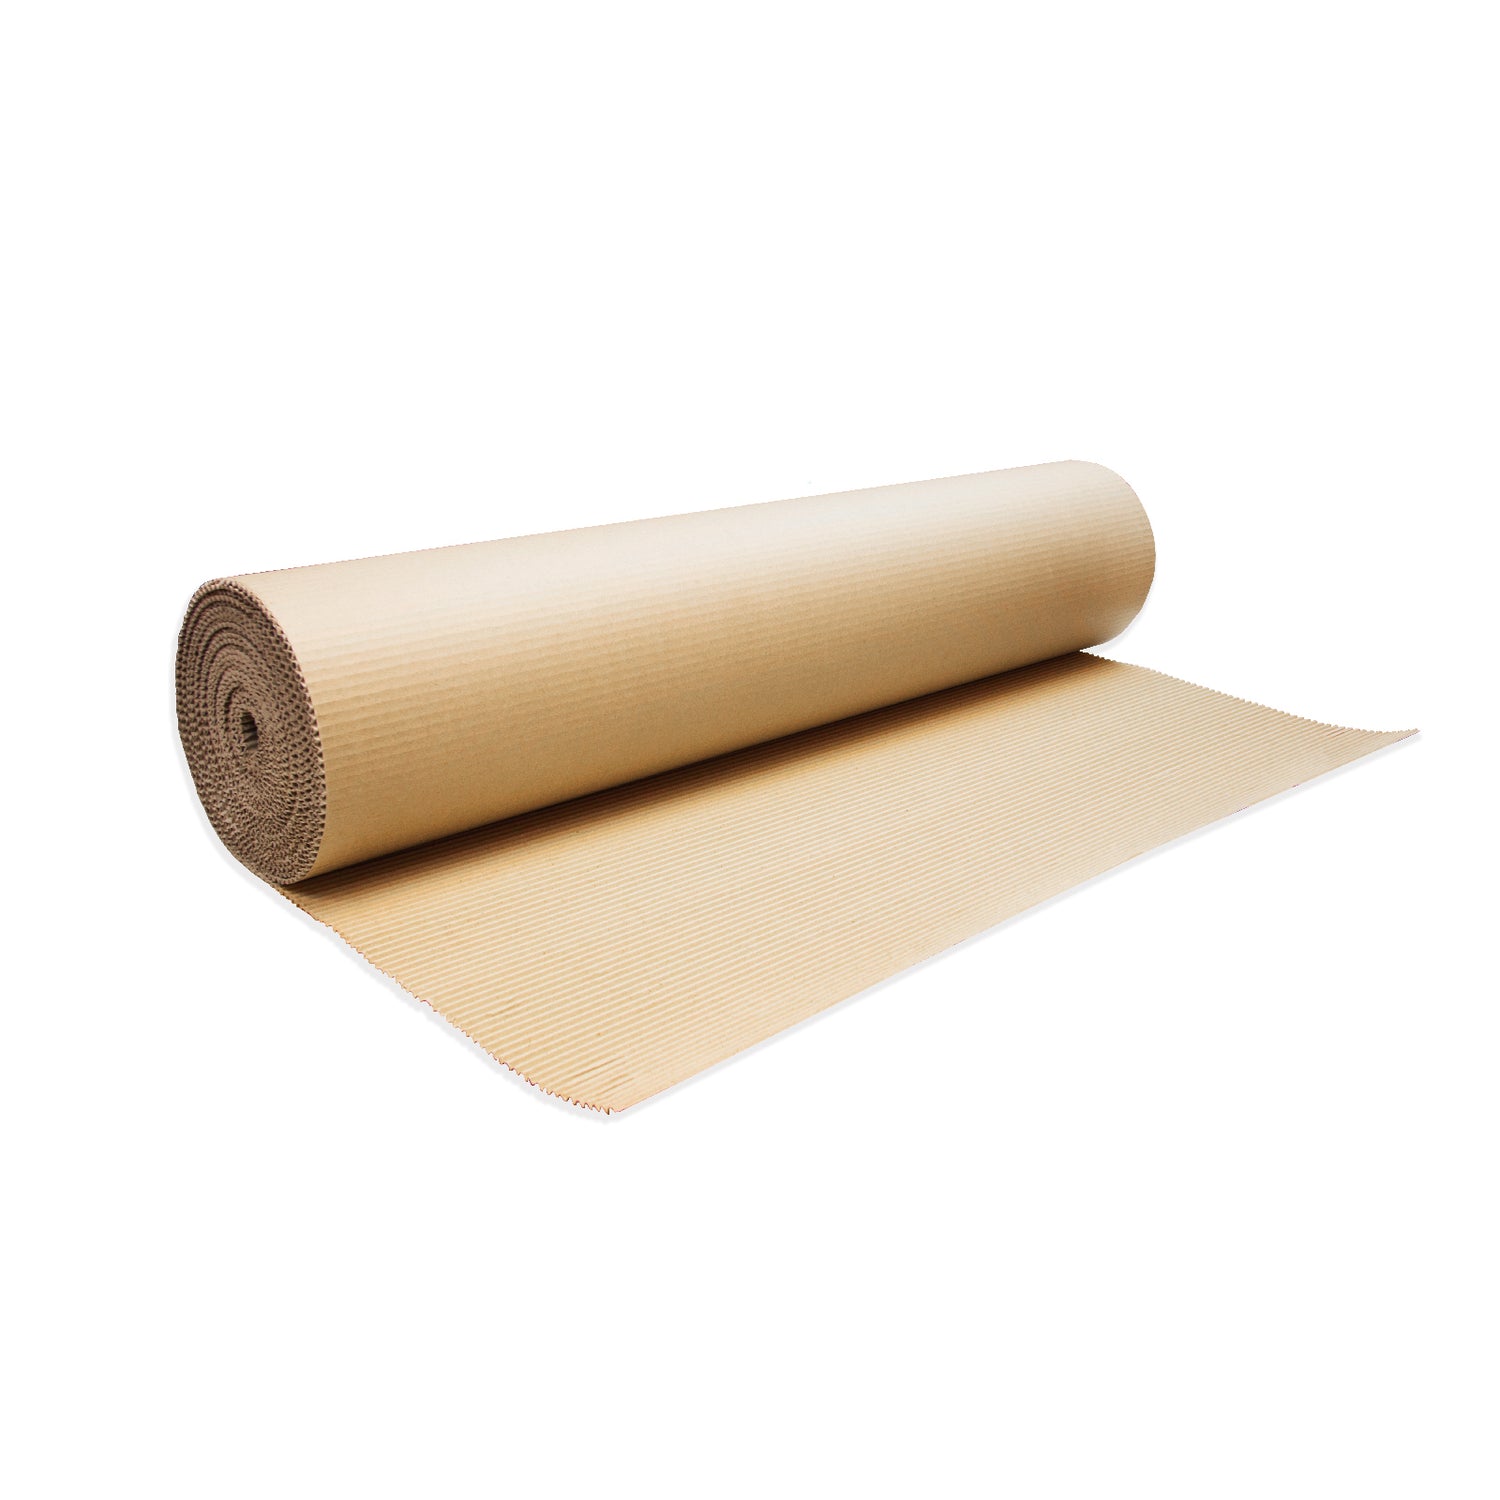 Corrugated Roll 見坑紙